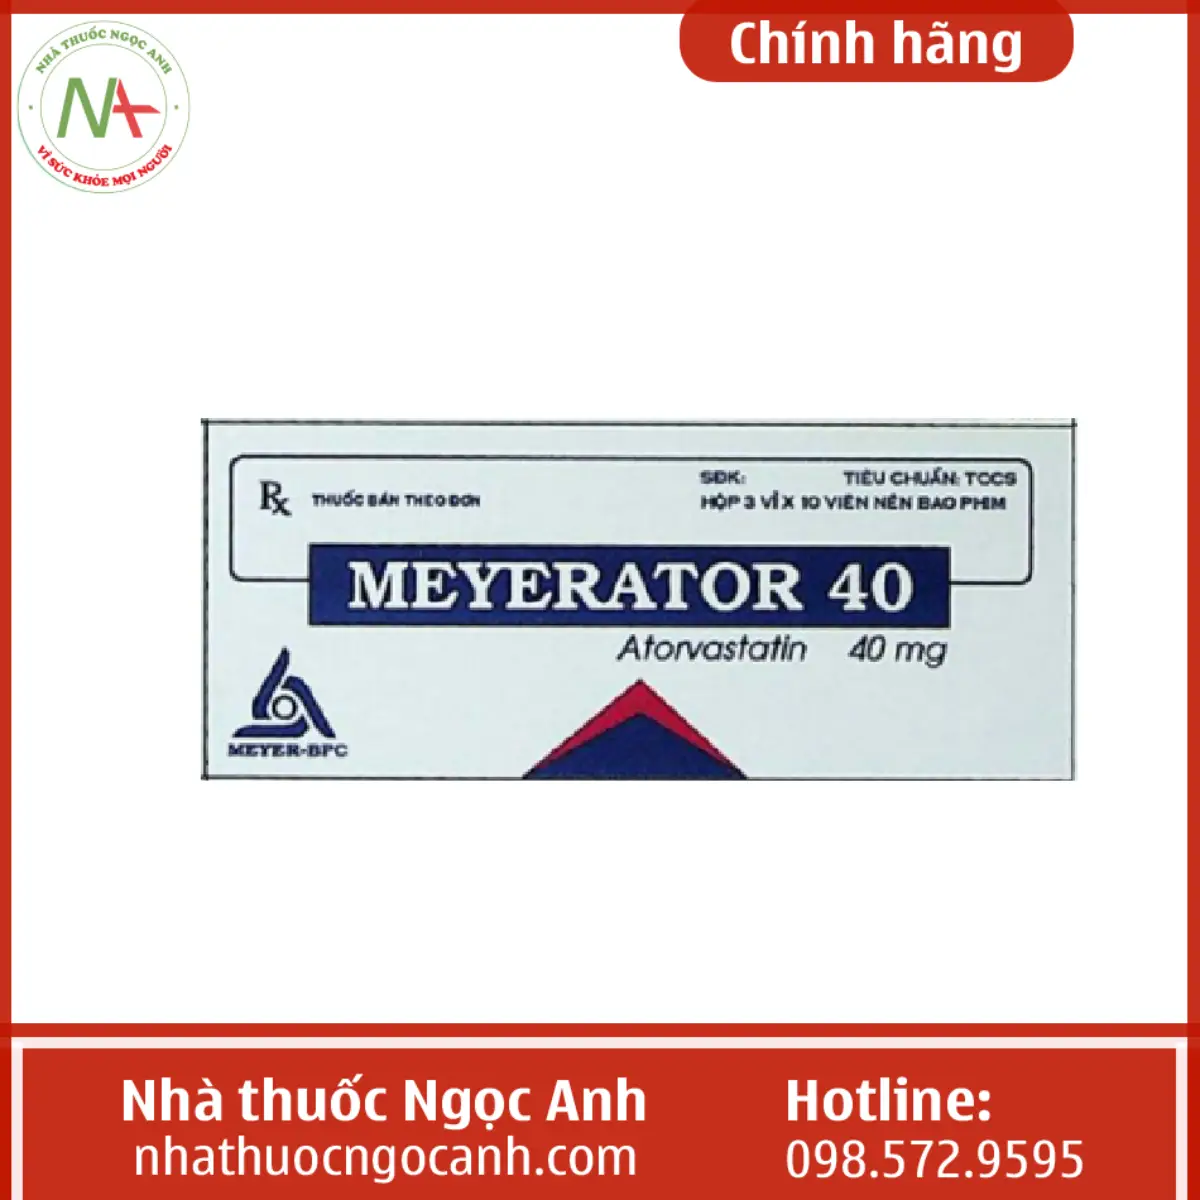 Meyerator 40